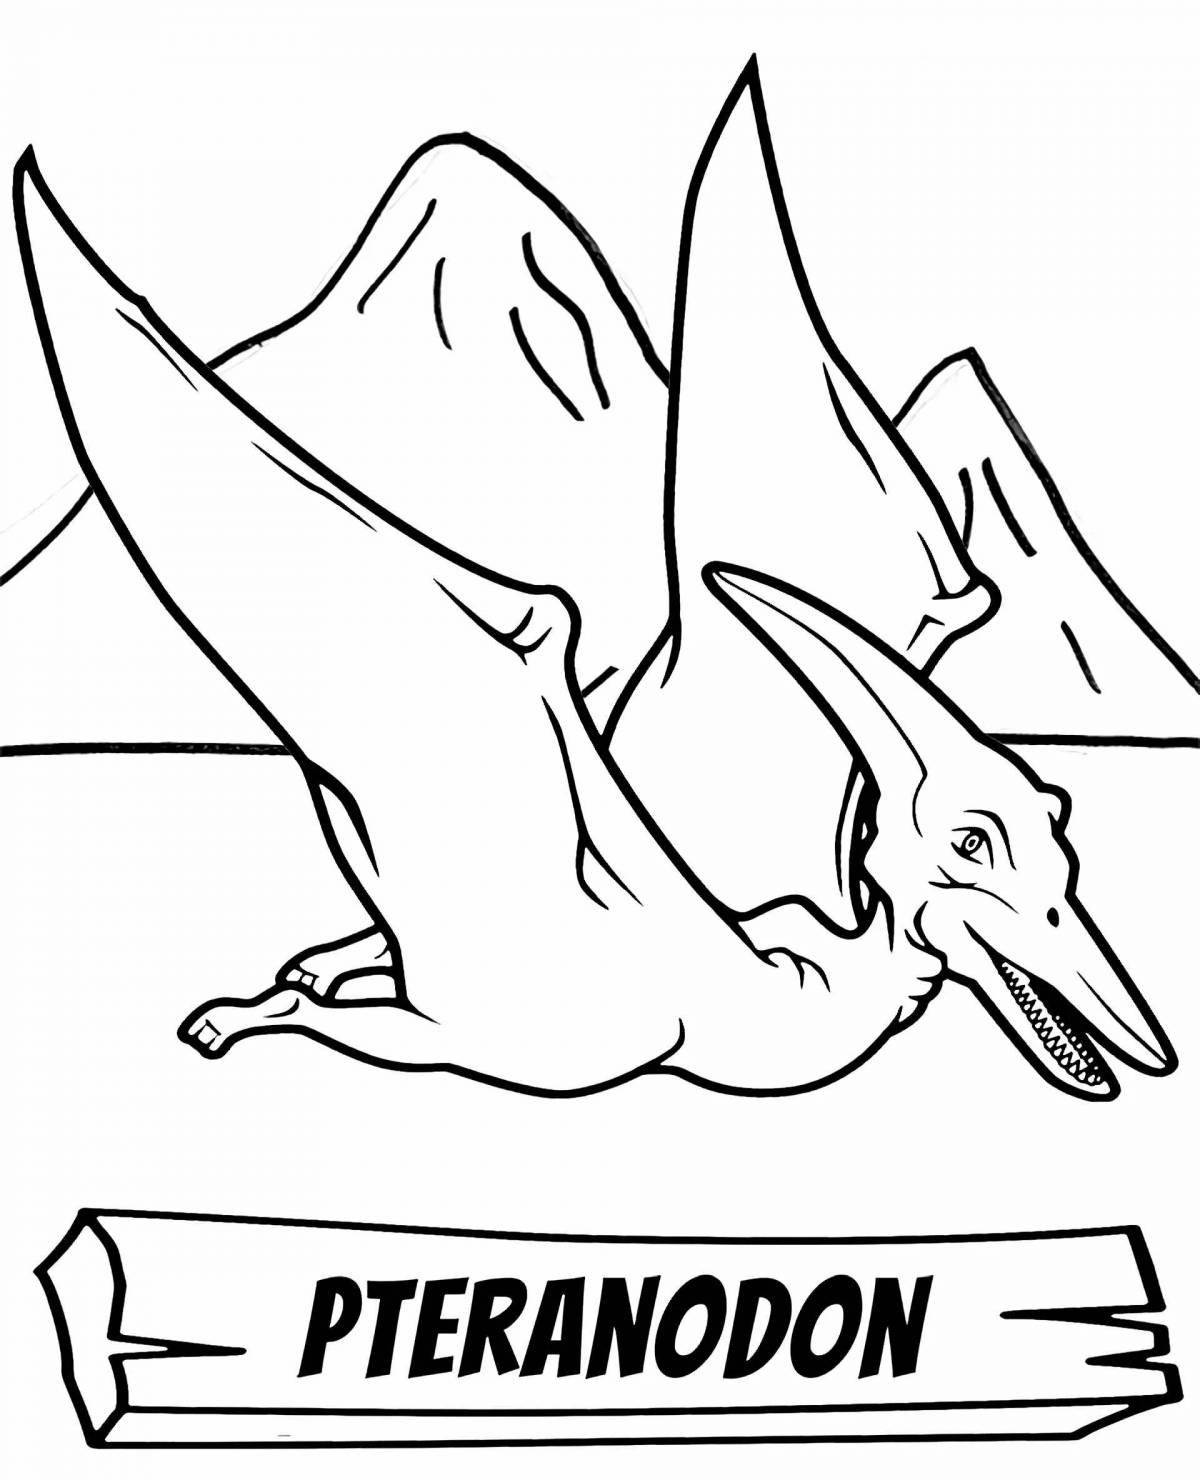 Adorable pteranodon coloring book